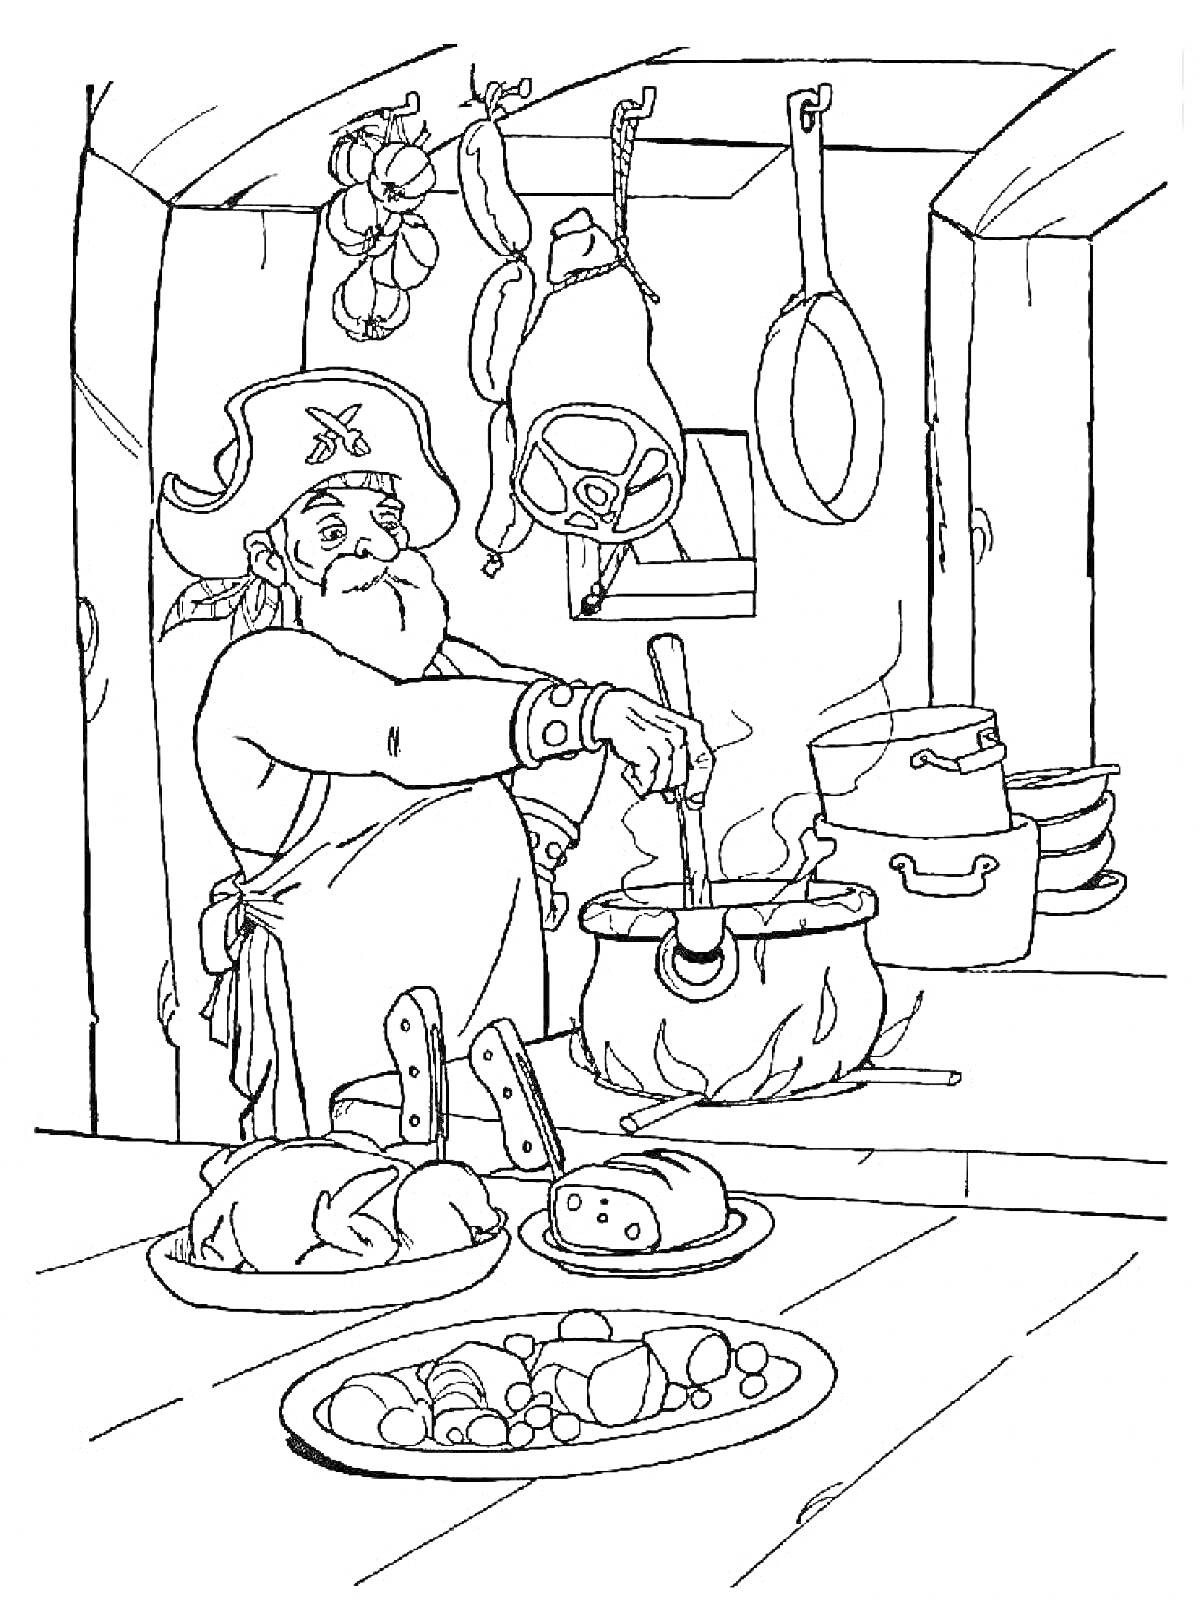 Раскраска Повар, готовящий еду на кухне с ножами, рыбой, овощами, кастрюлями и висящими кухонными принадлежностями